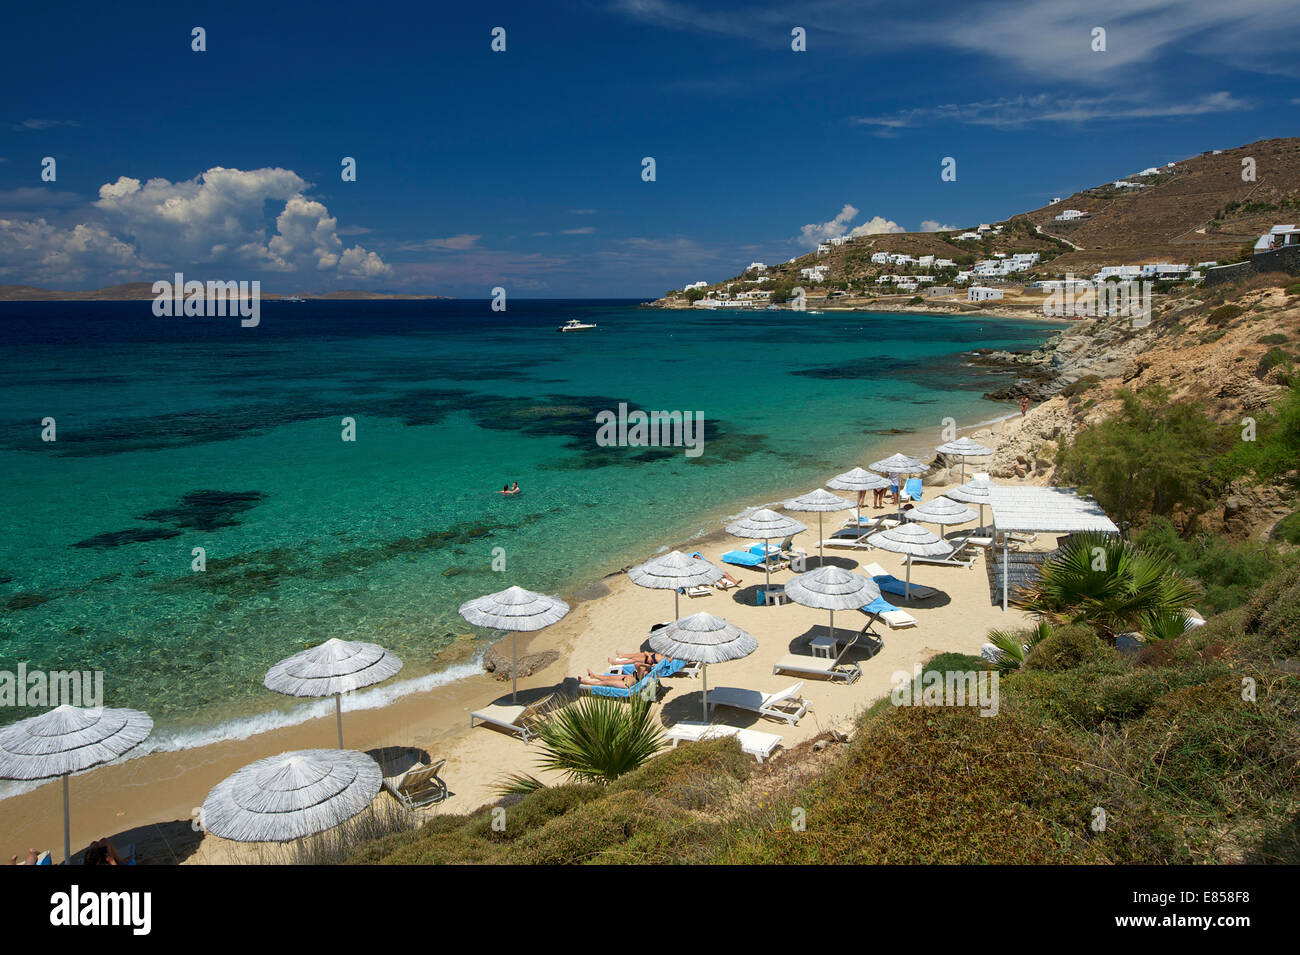 Beach in Agios Ioannis, Mykonos, Cyclades, Greece Stock Photo - Alamy